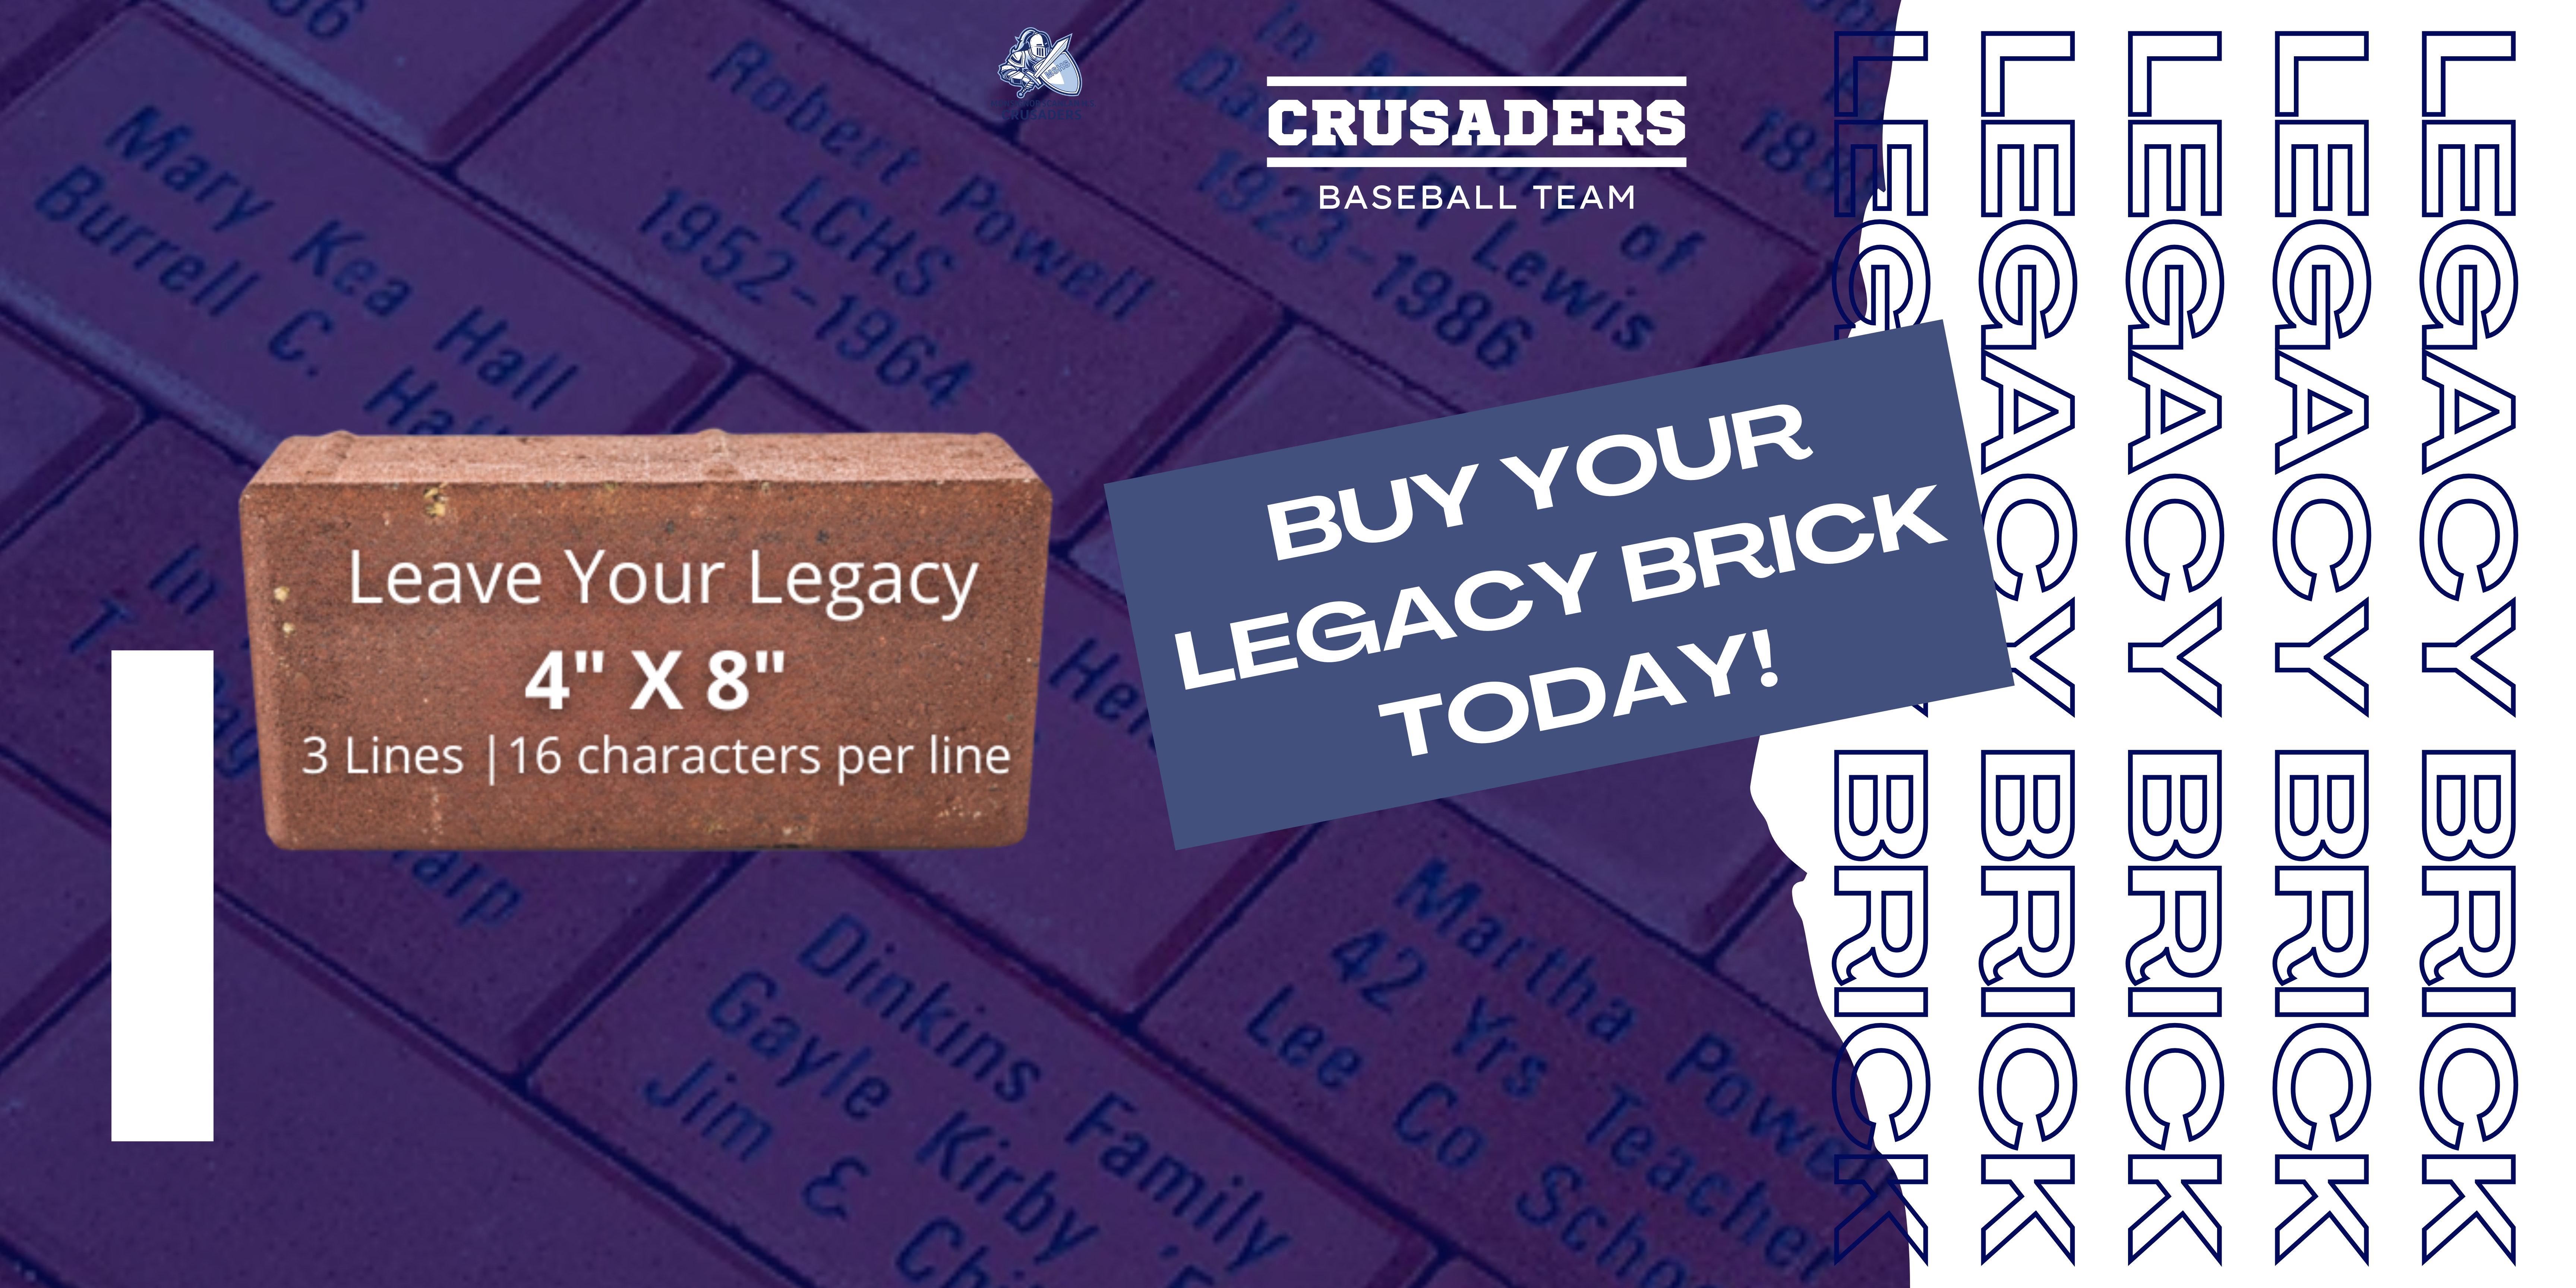 Baseball Crusader Legacy Brick Graphic